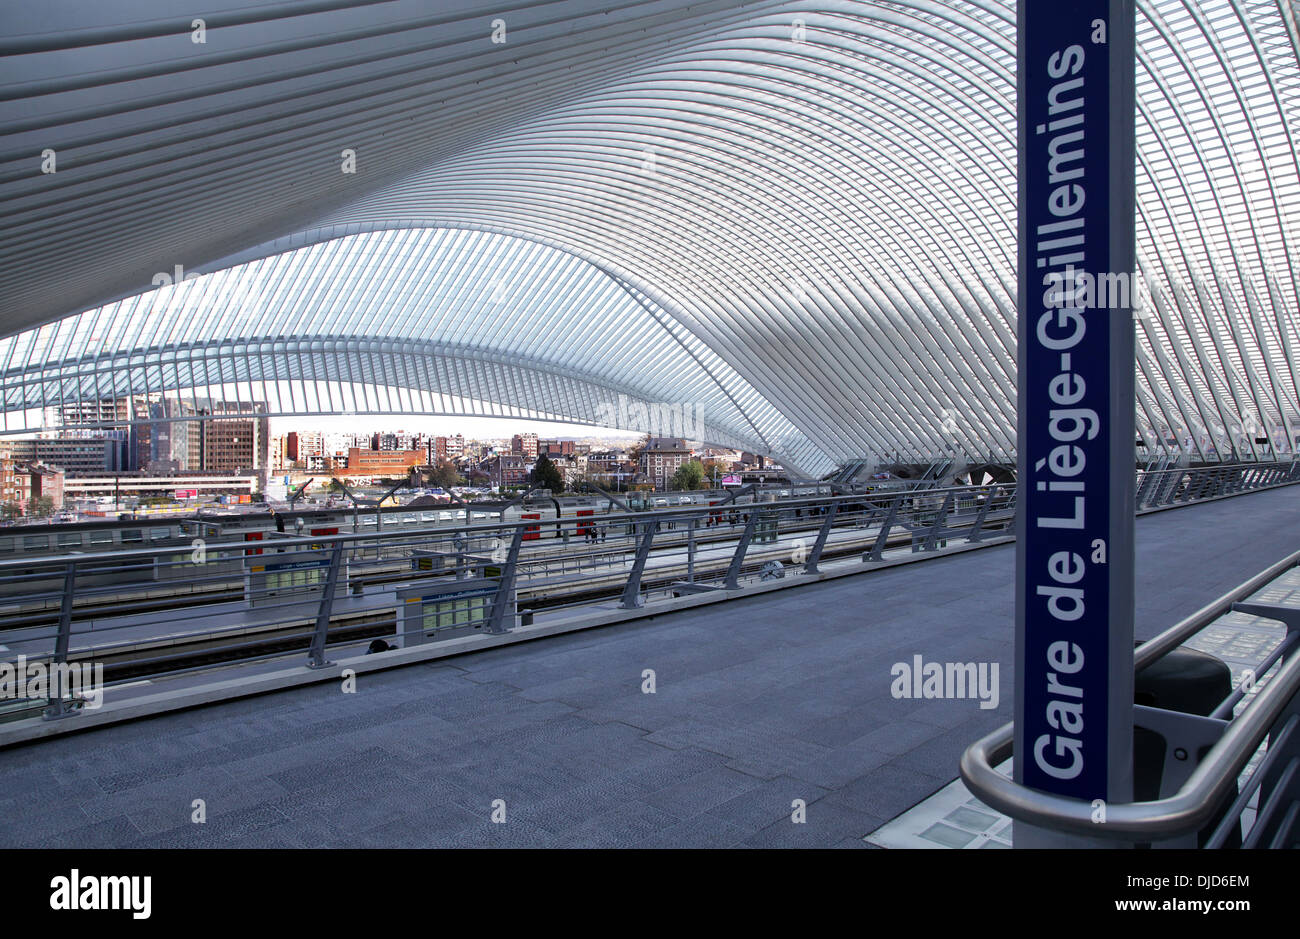 La gare de Liège, gare de Liège-Guillemins, conçu par l'architecte espagnol Santiago Calatrava. Liège, Wallonie, Belgique Banque D'Images